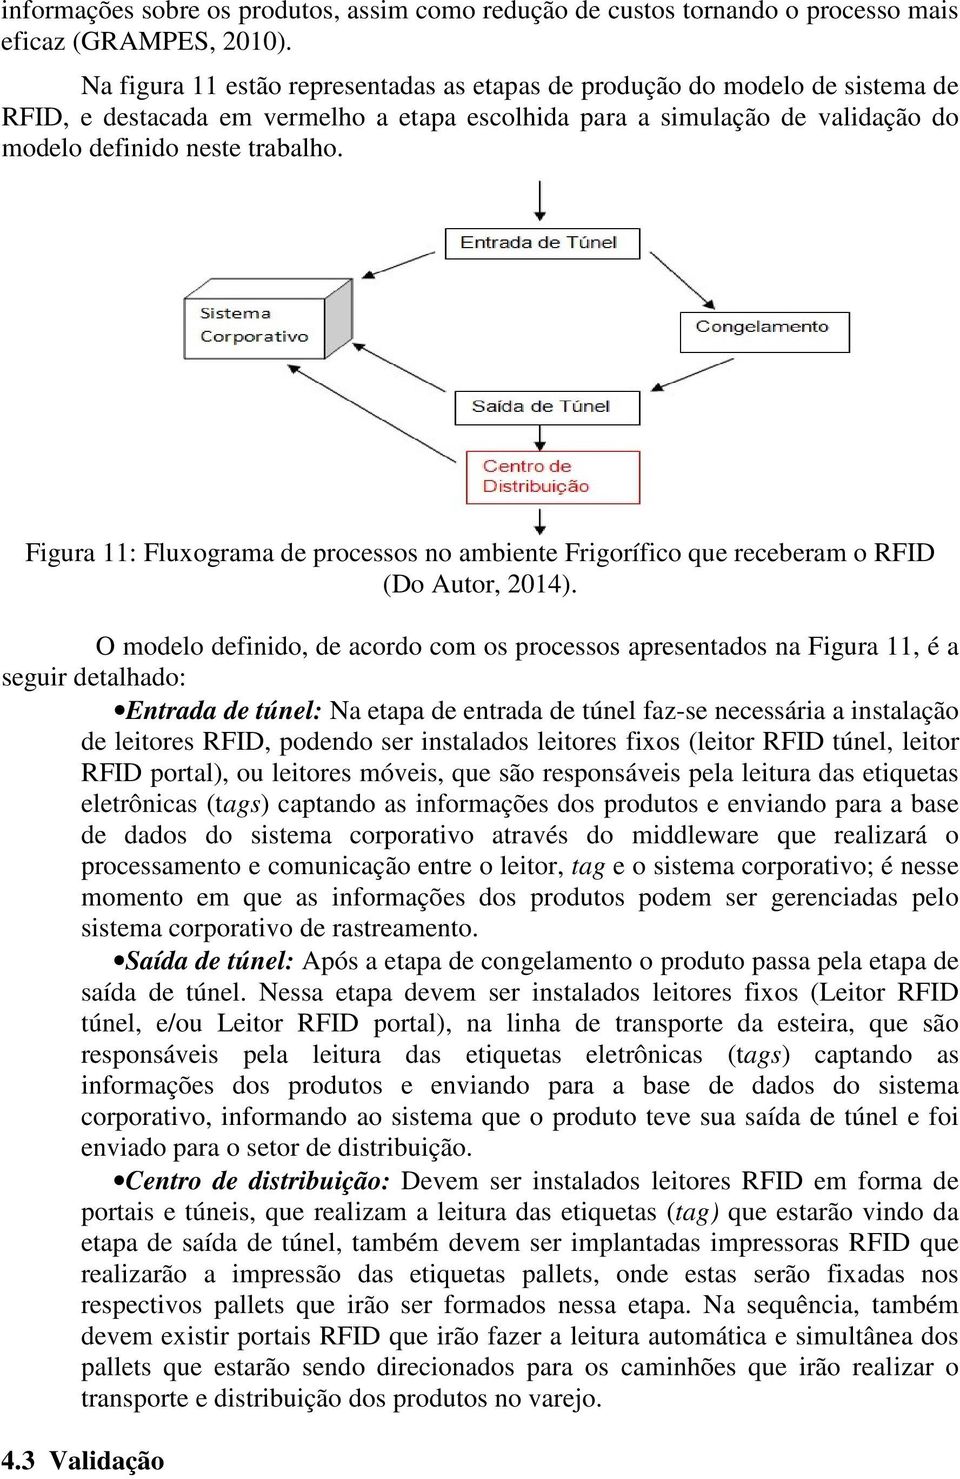 Figura 11: Fluxograma de processos no ambiente Frigorífico que receberam o RFID (Do Autor, 2014).